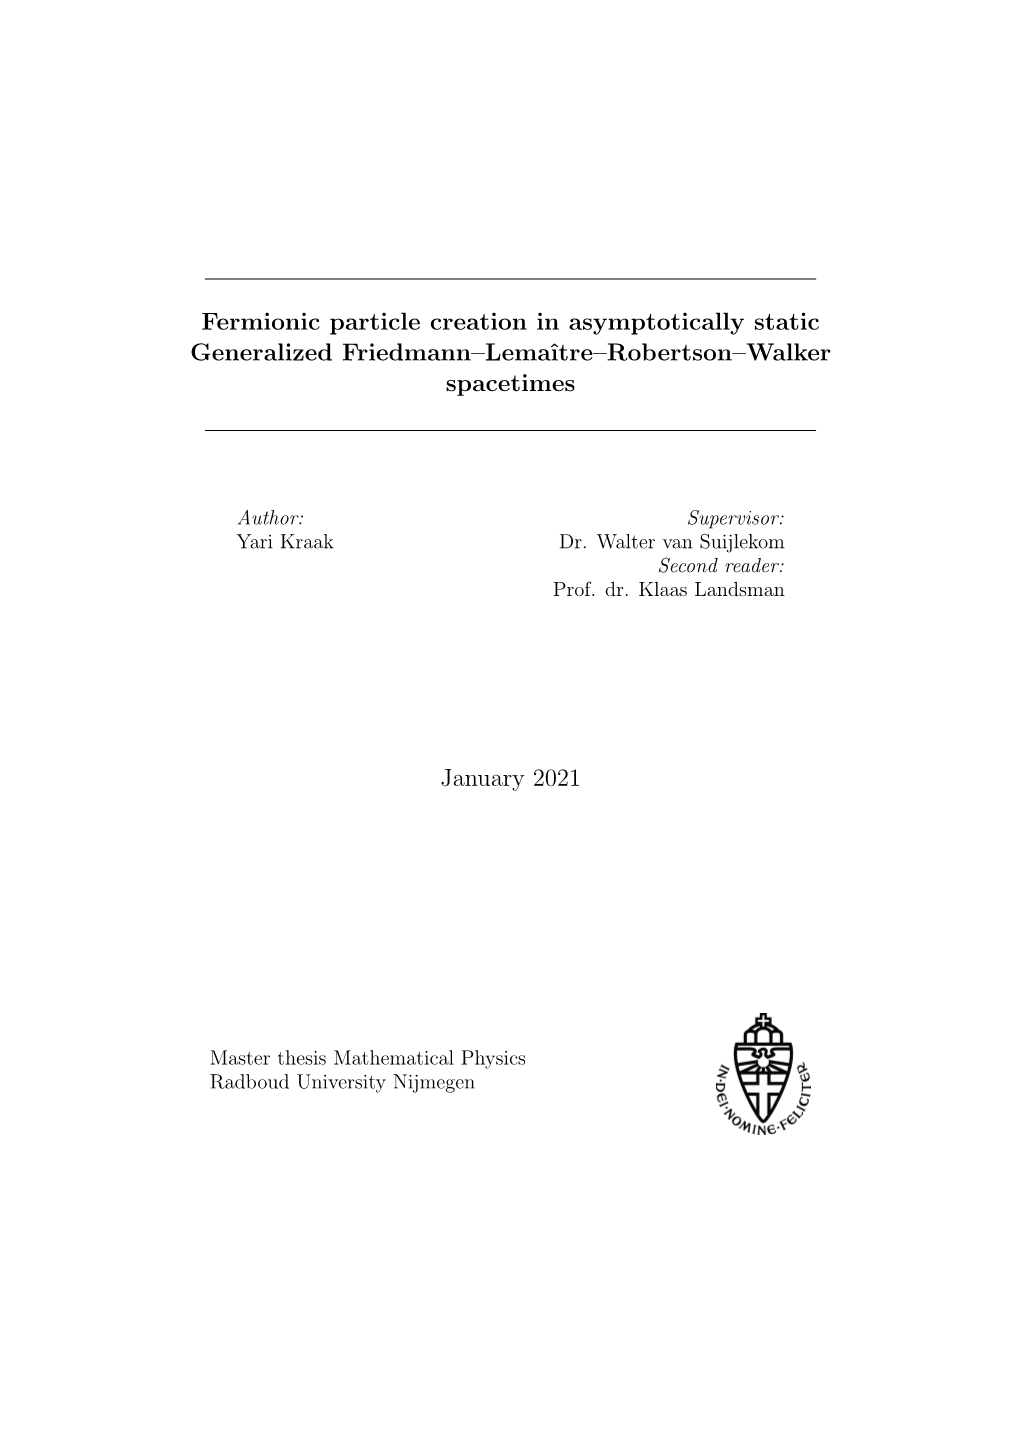 Fermionic Particle Creation in Asymptotically Static Generalized Friedmann–Lemaˆıtre–Robertson–Walker Spacetimes